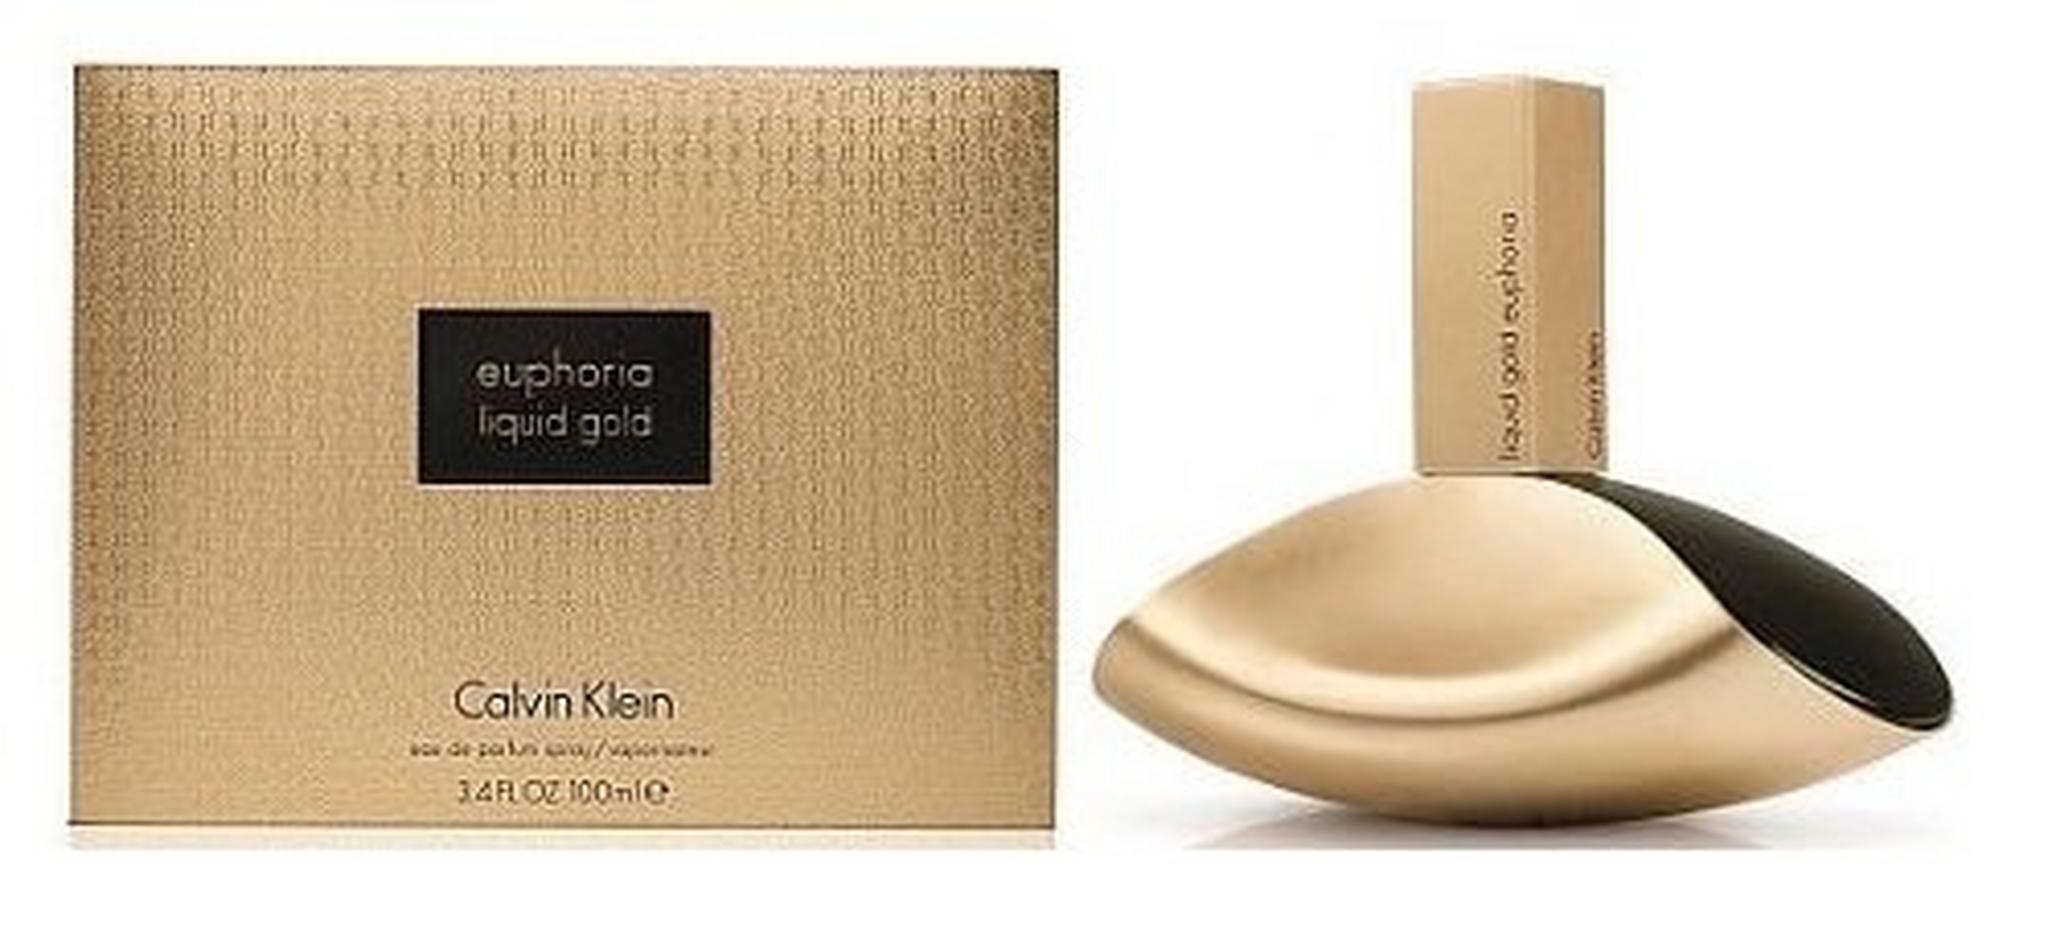 Calvin Klein Liquid Gold Euphoria Perfume for Women 100ml